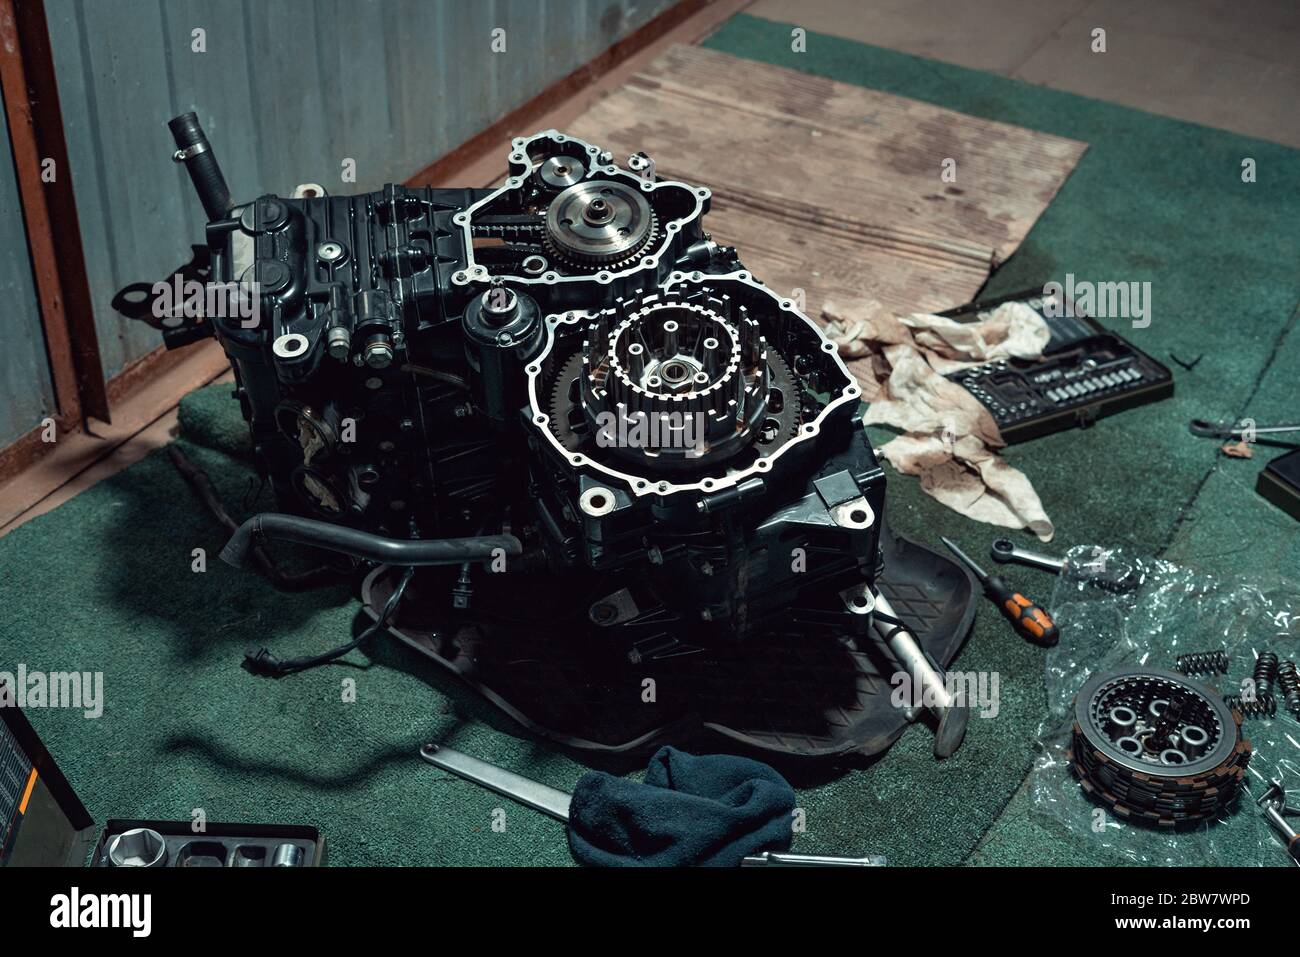 Motore per motociclette veloci smontato con frizione visibile. Sedici valvole e quattro cilindri. Foto Stock